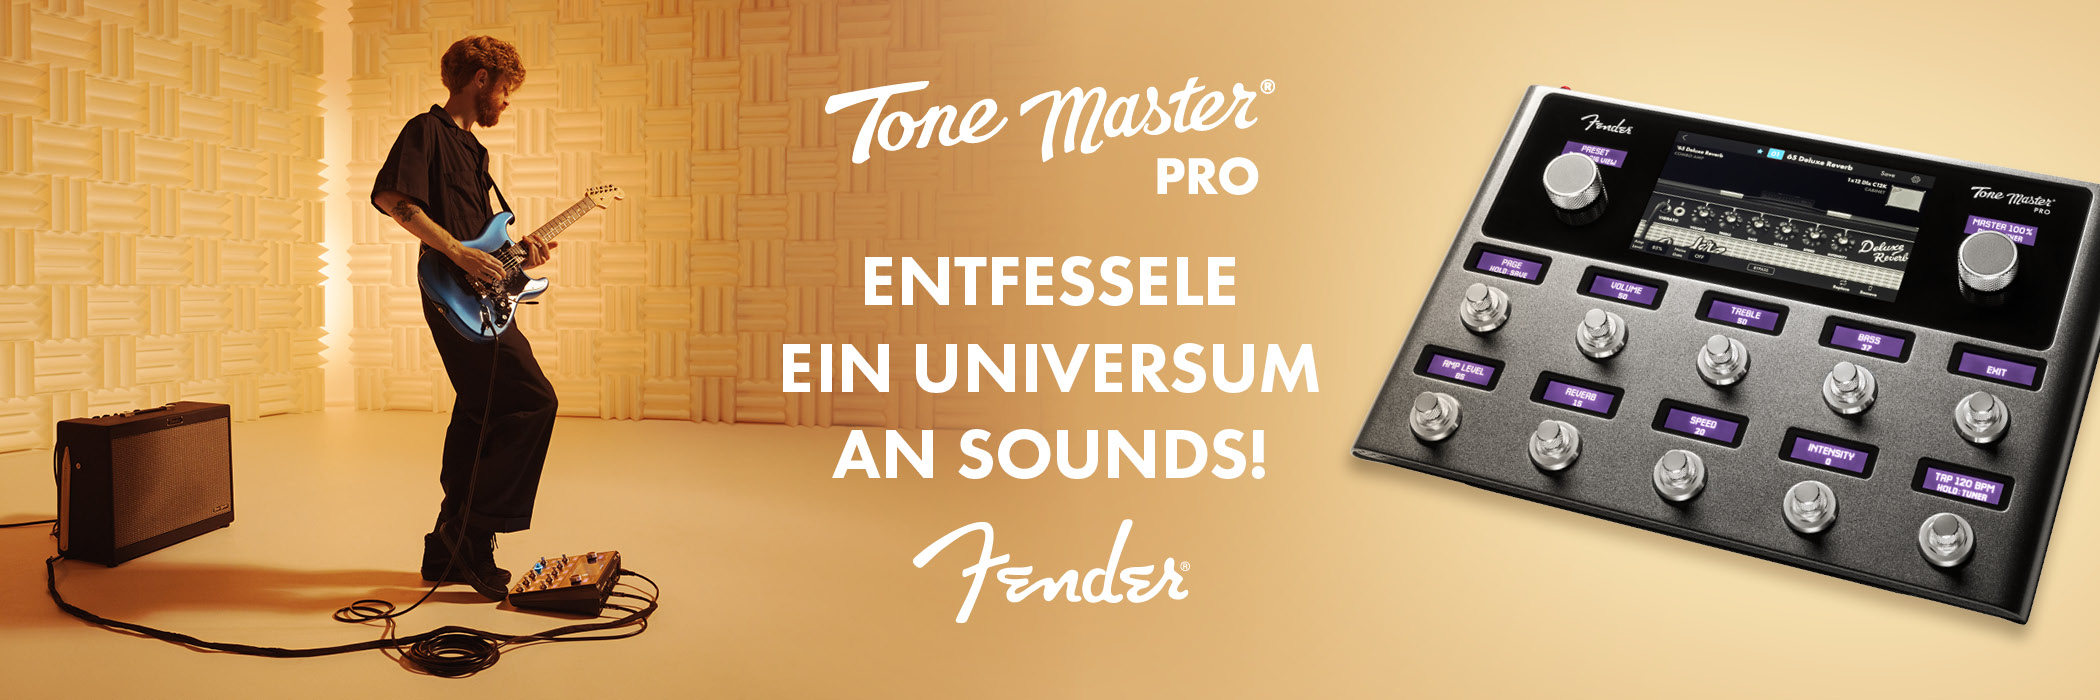 Banner für Fender Tone Master Pro